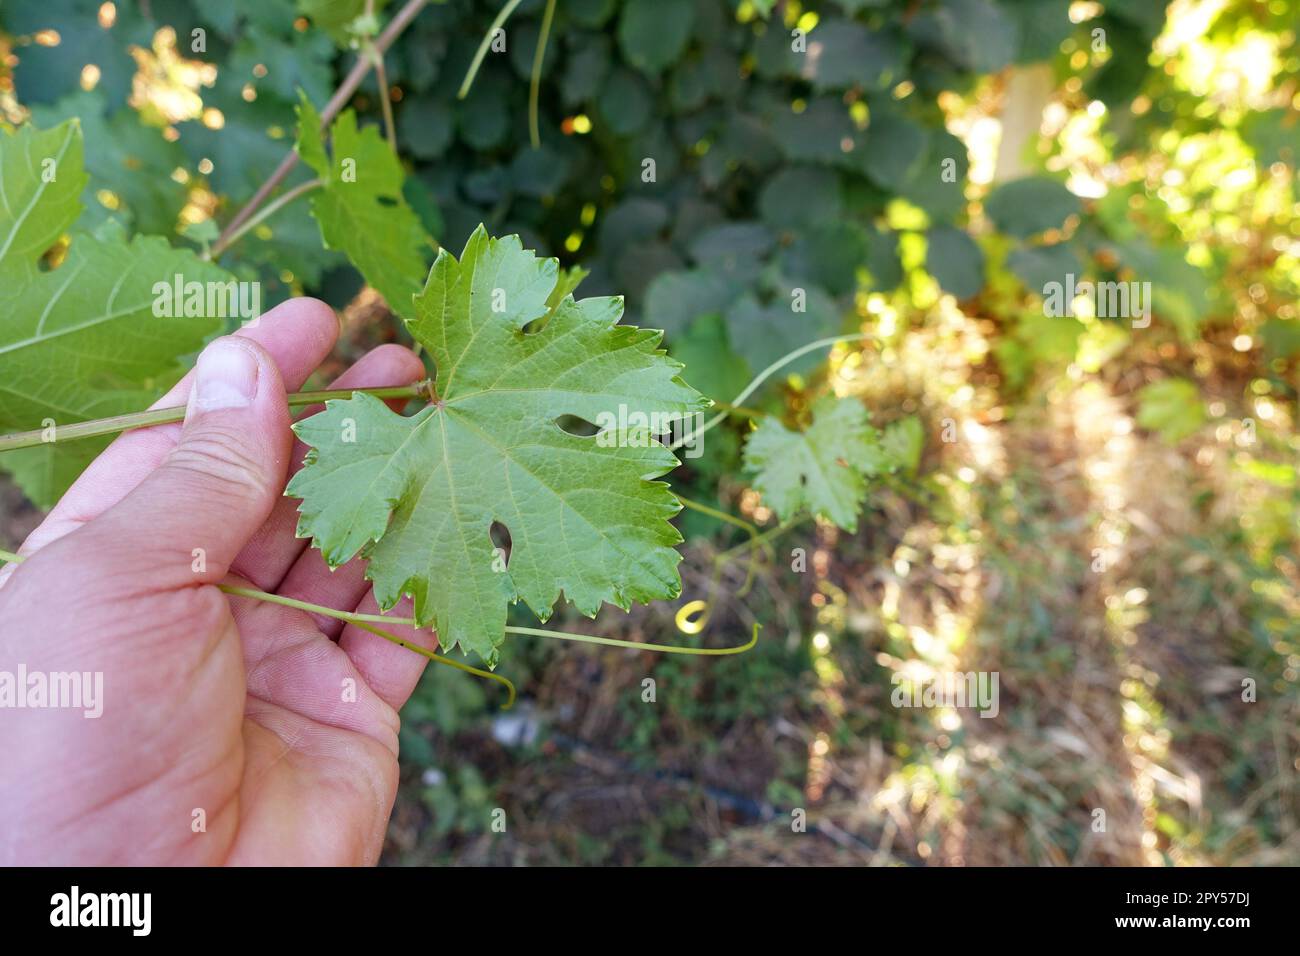 germogli e foglie di vite, foglie di uva, foglie di vite fresche Foto Stock